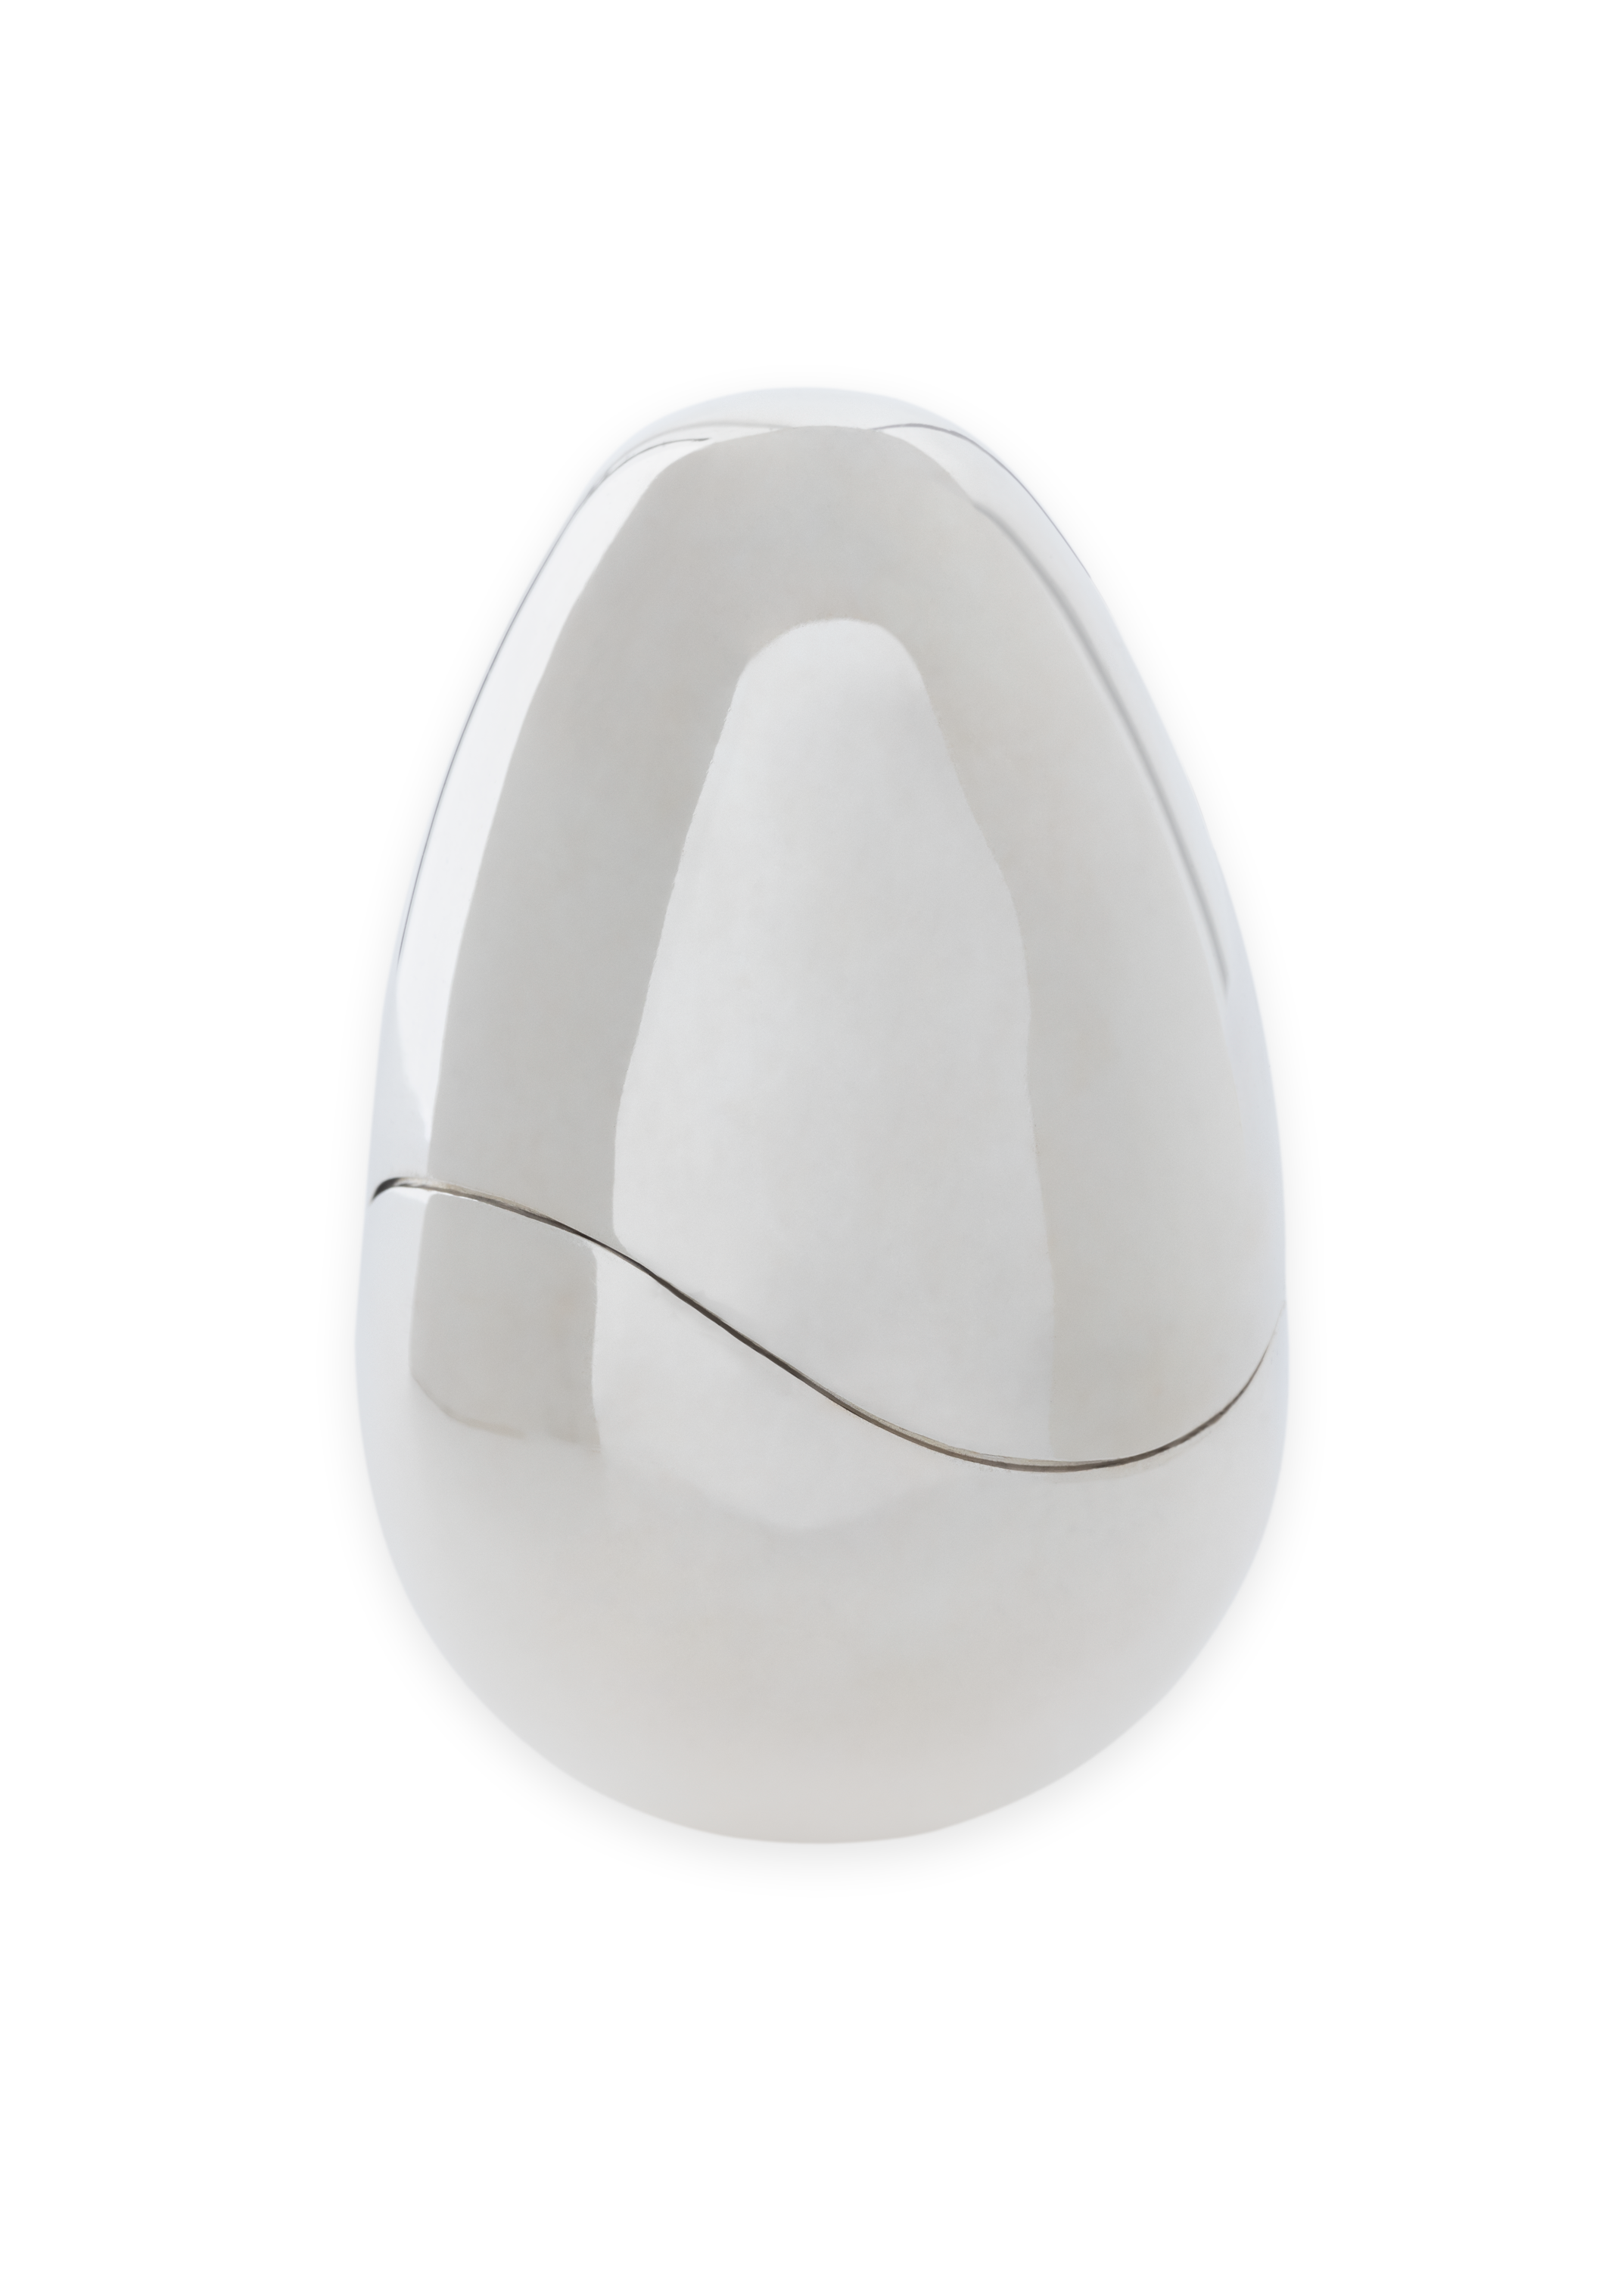 the egg caja de plata